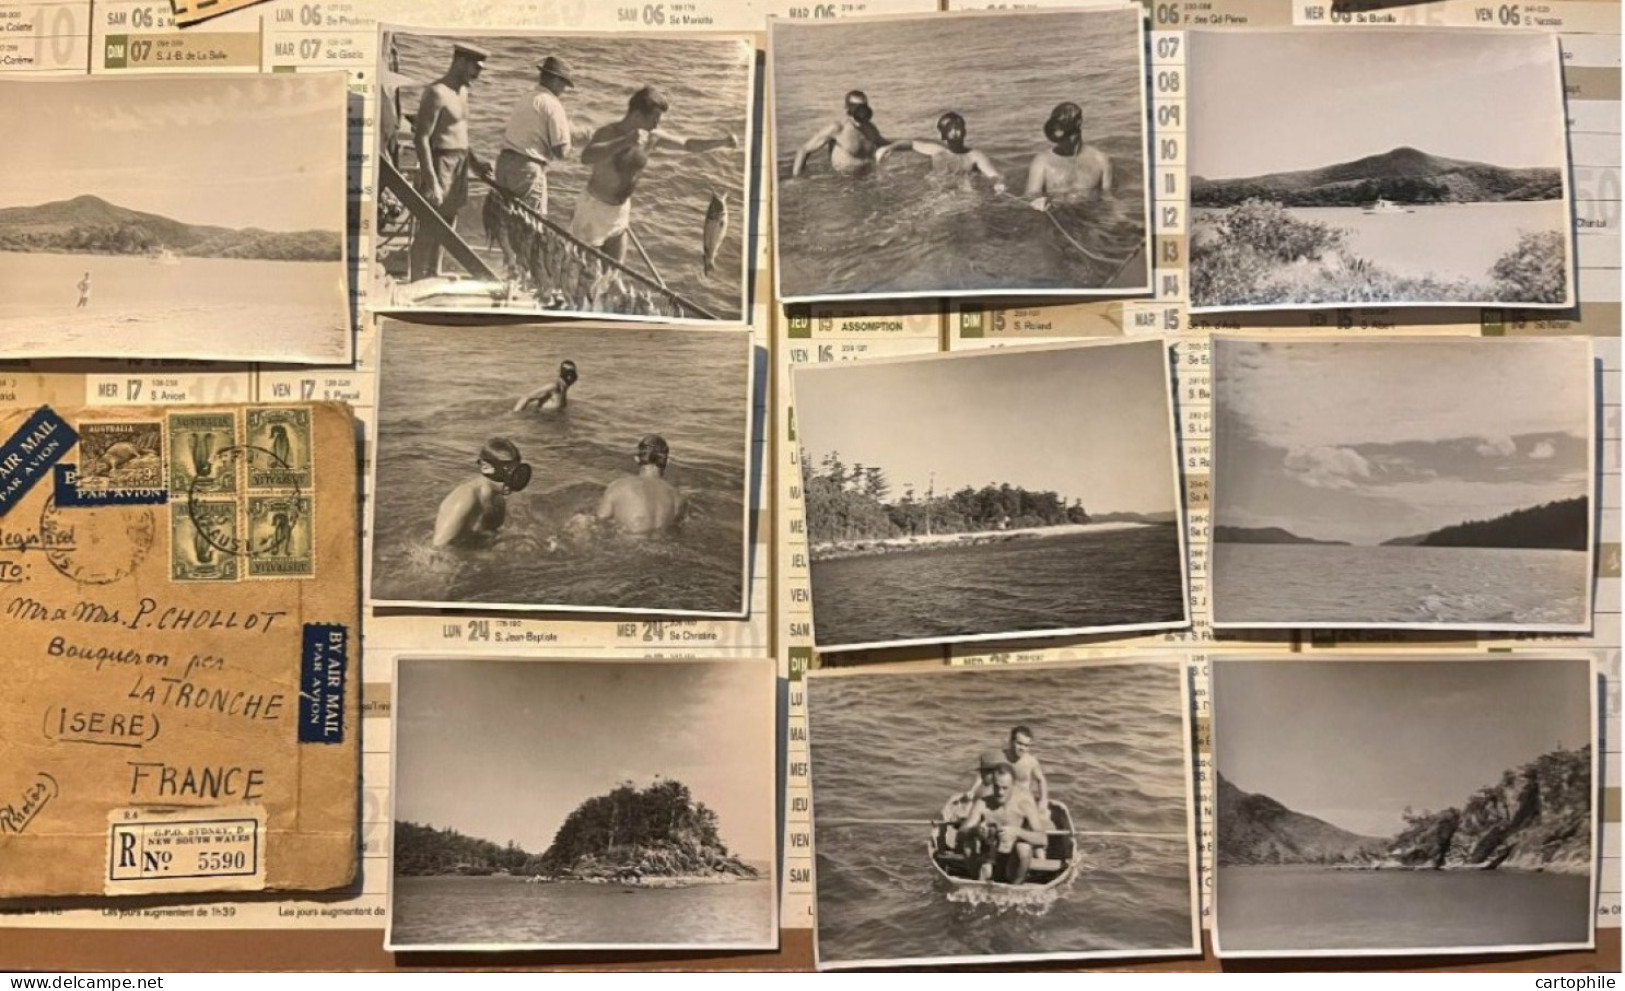 Australia - Lot De 10 Photos De 1948 Barrière De Corail Prise Par Chollot Consulat Francais à Sydney NSW Bowen Peche - Ozeanien